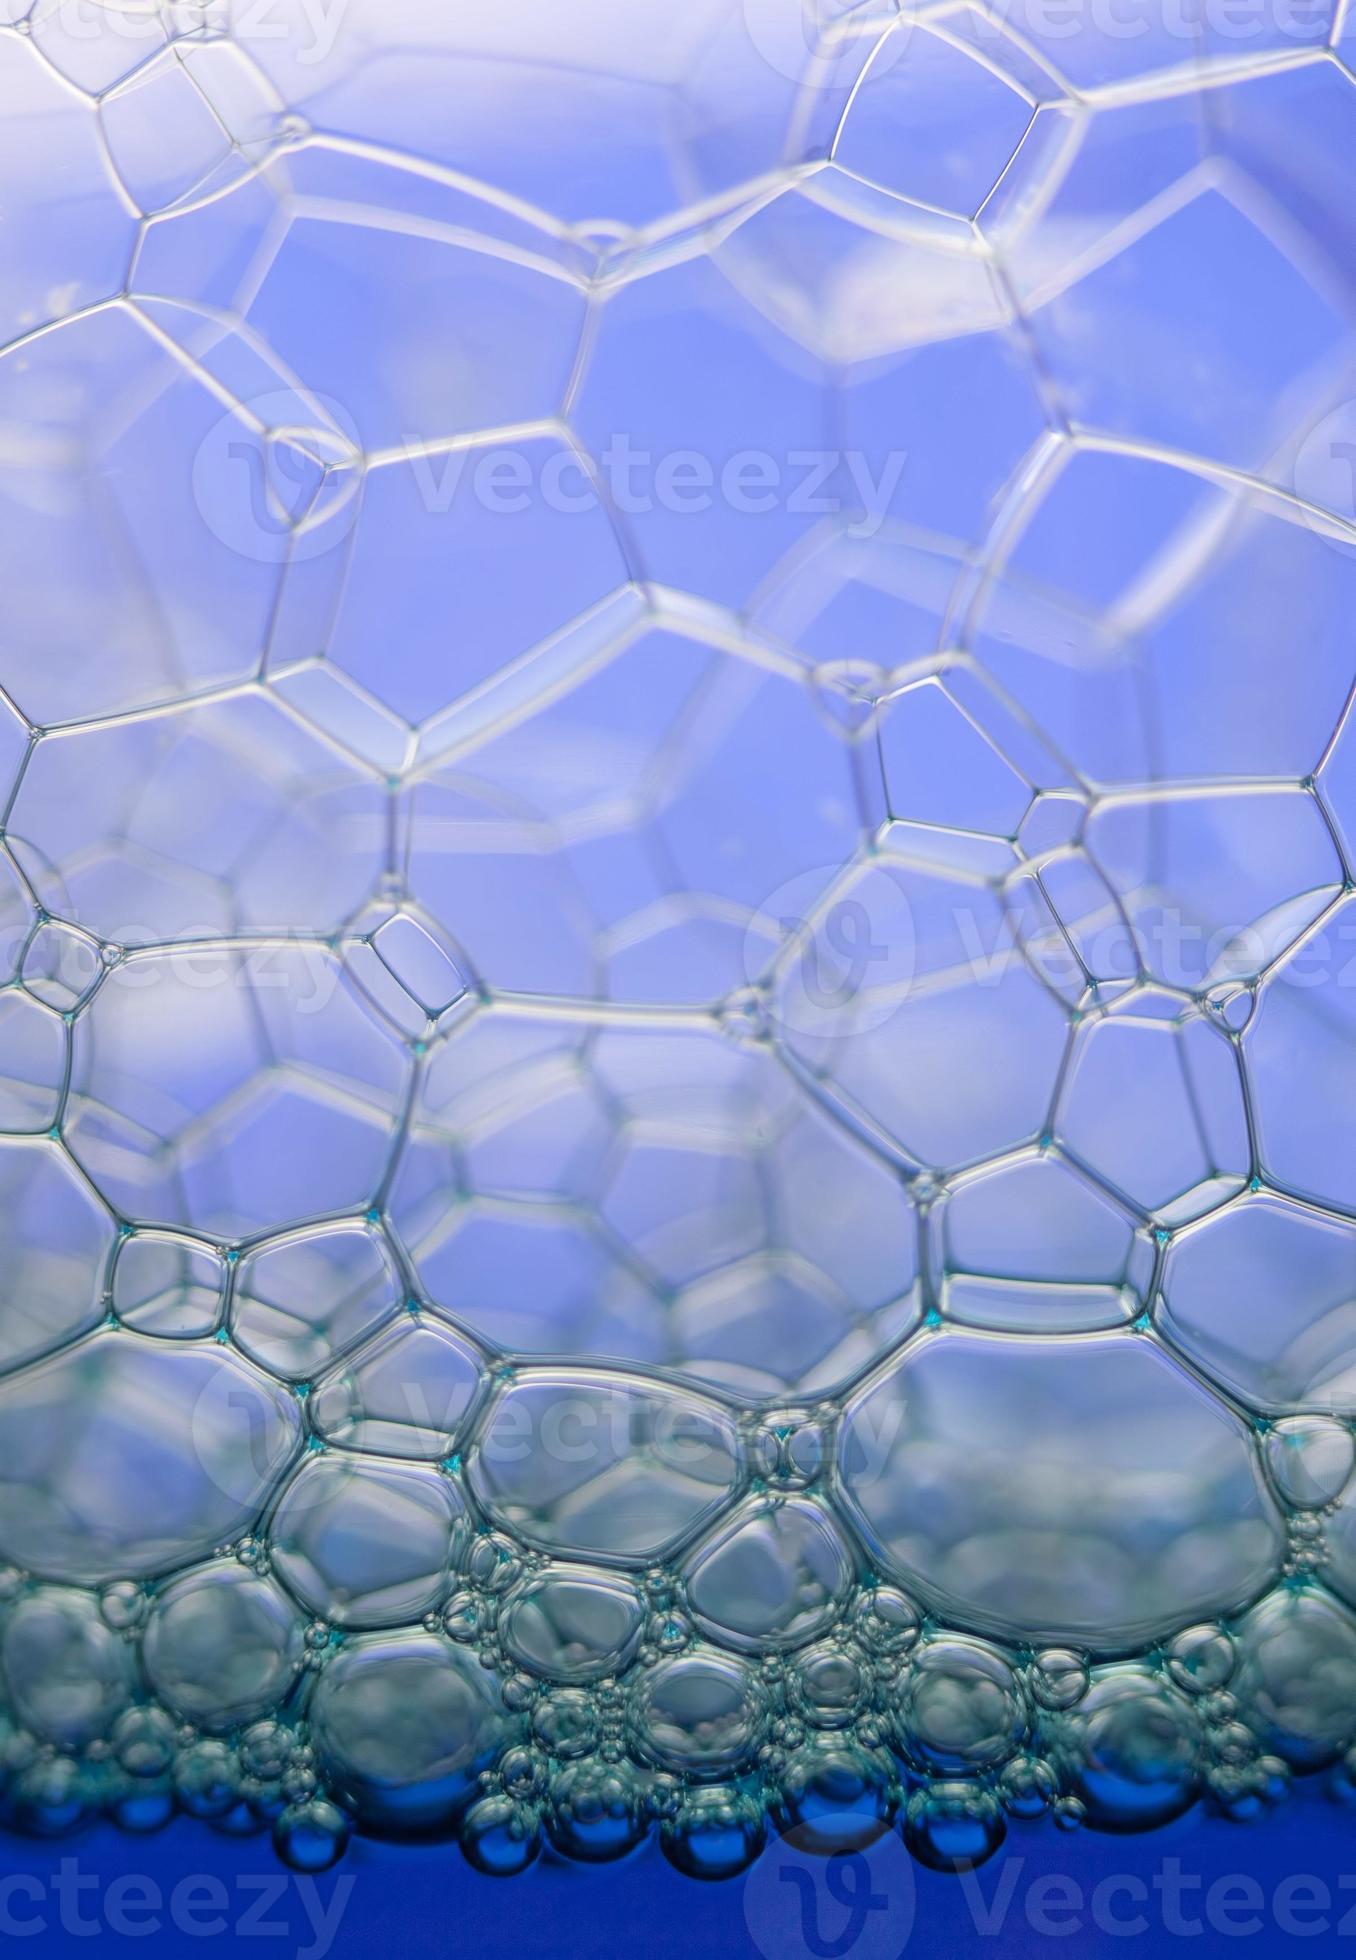 zeepbellen extreme close-up foto